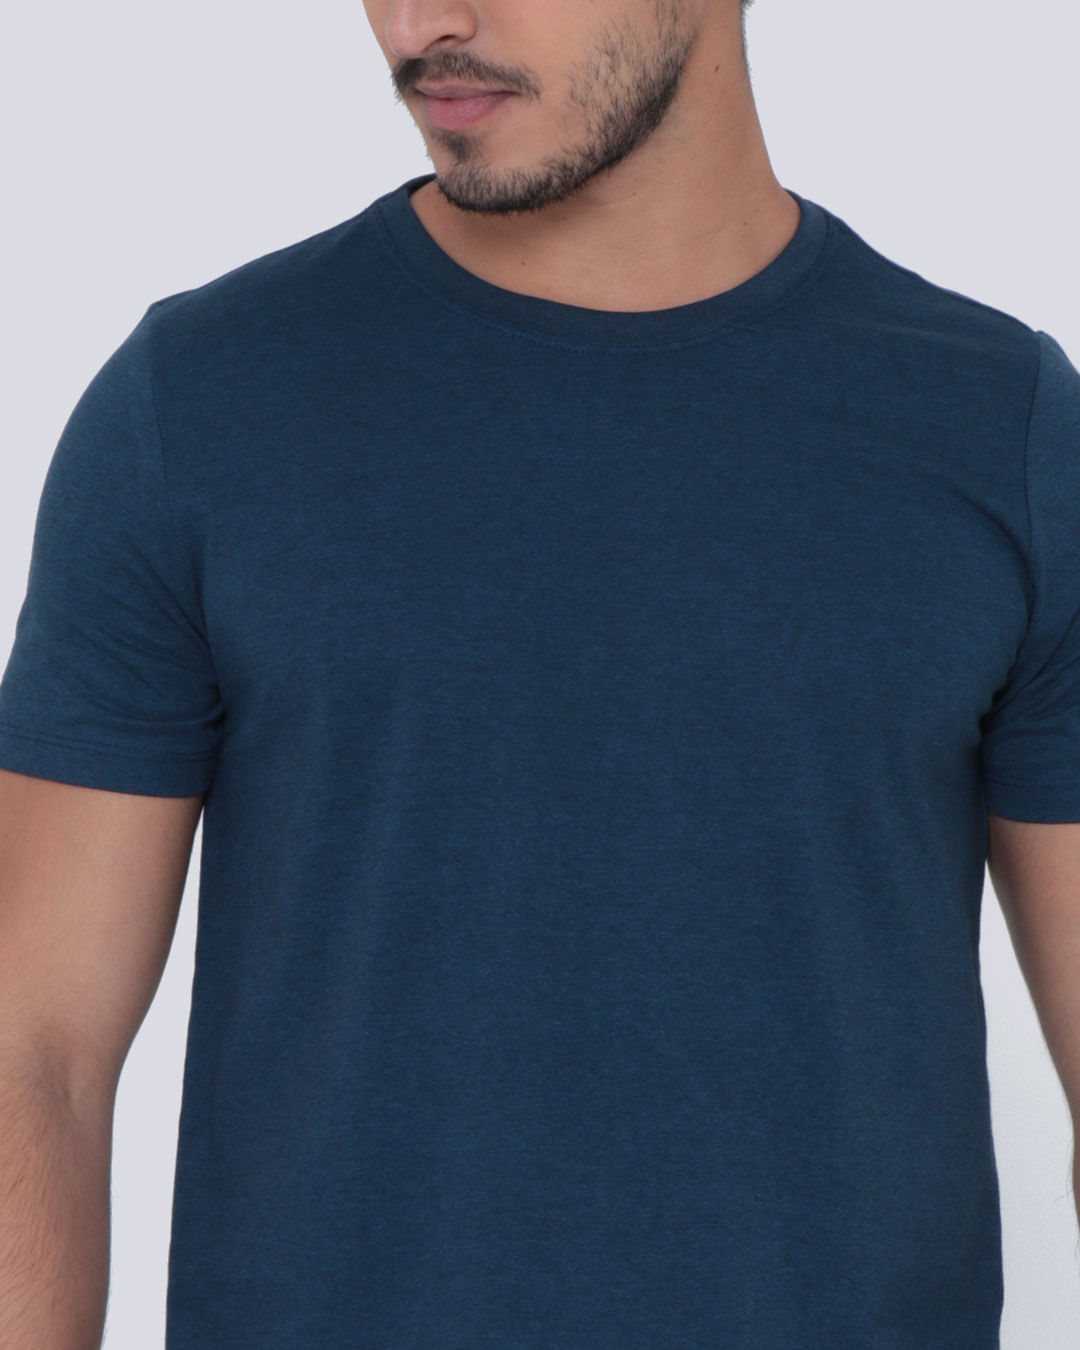 Camiseta-201-Mc-Gc-Marinho-Fio-Preto---Azul-Outros